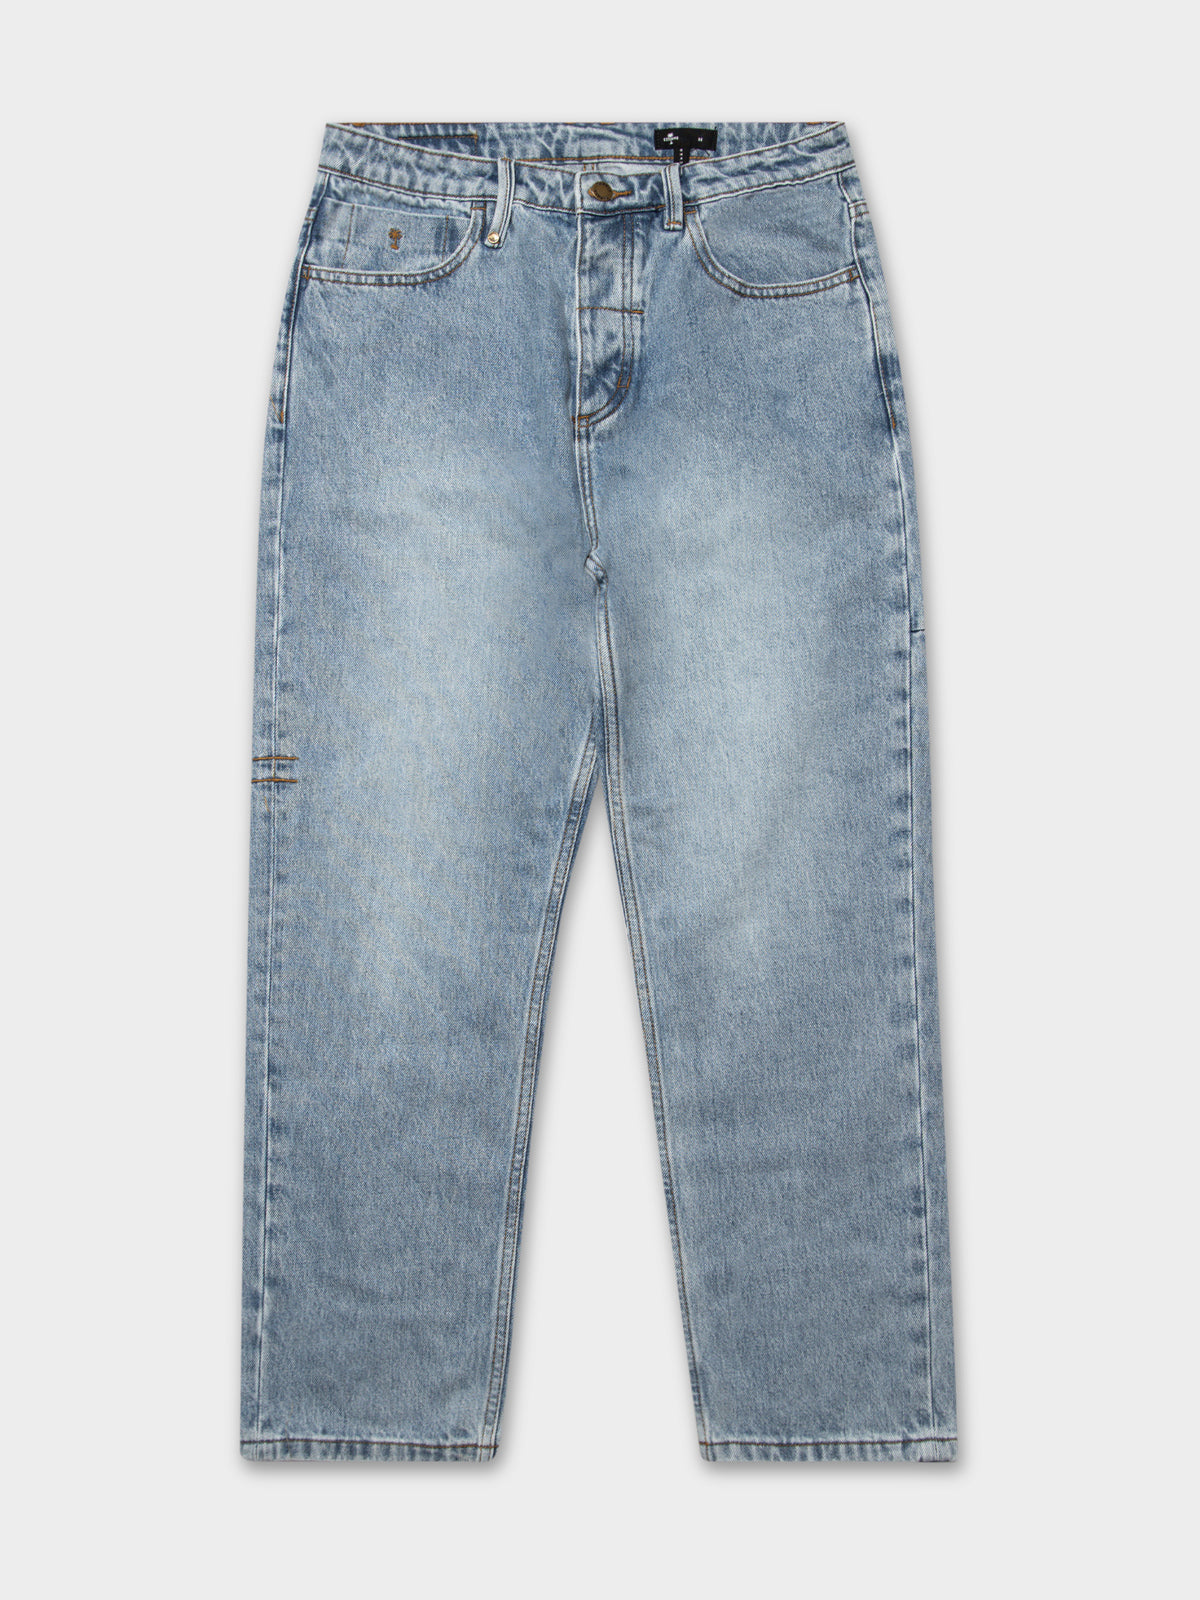 Slacker Jeans in Aged Blue